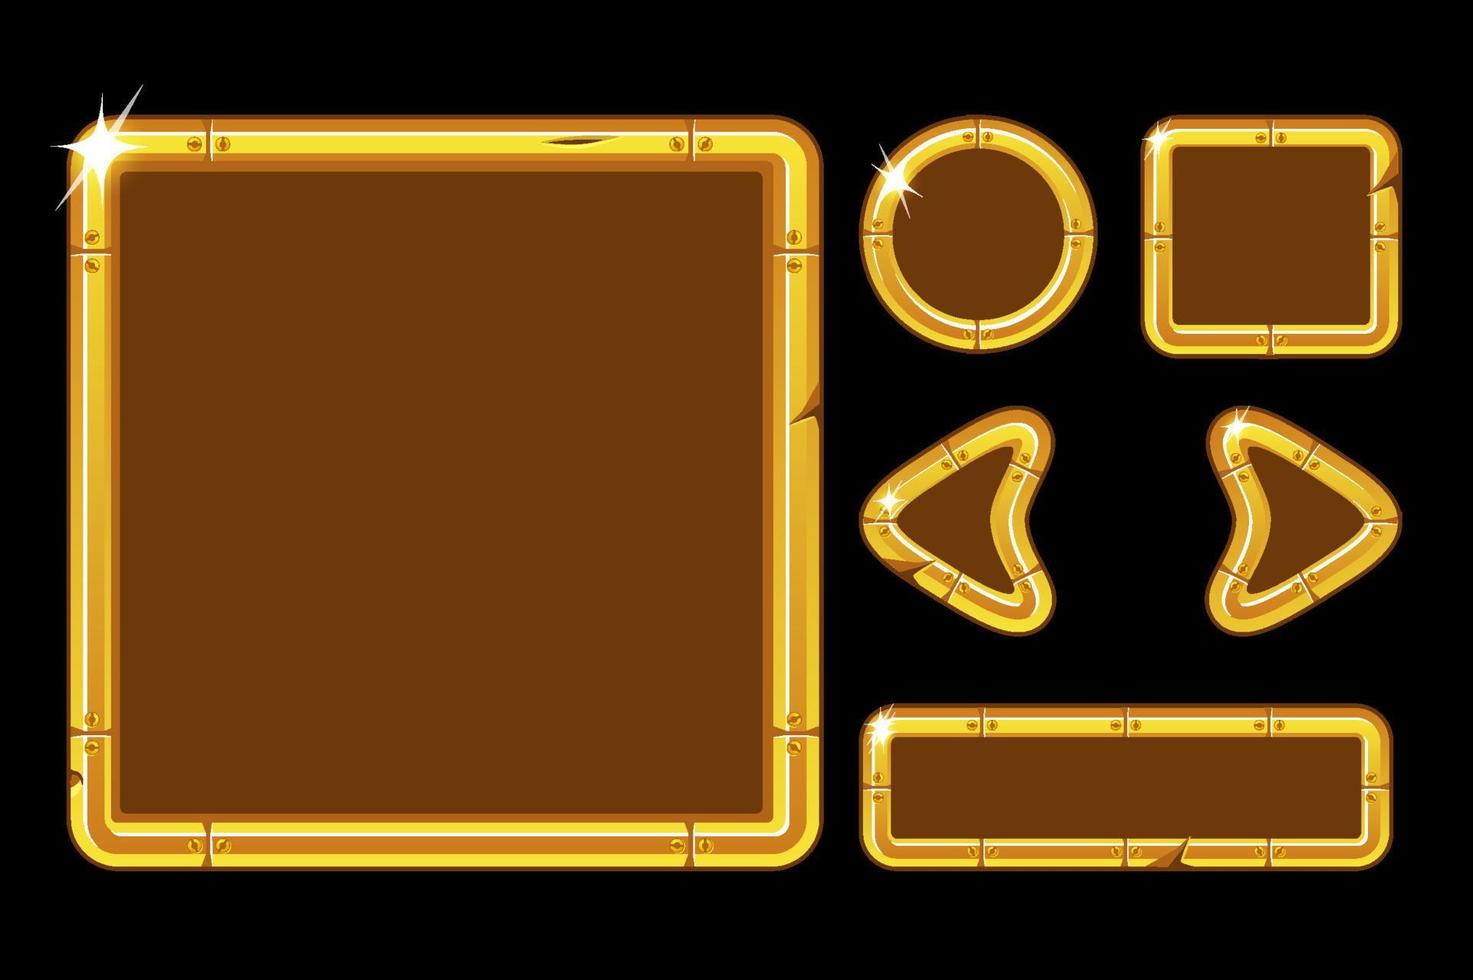 kit d'interface utilisateur de jeu vectoriel. interface utilisateur dorée pour le menu du jeu. modèle d'interface de fenêtre dorée avec boutons, flèches. vecteur